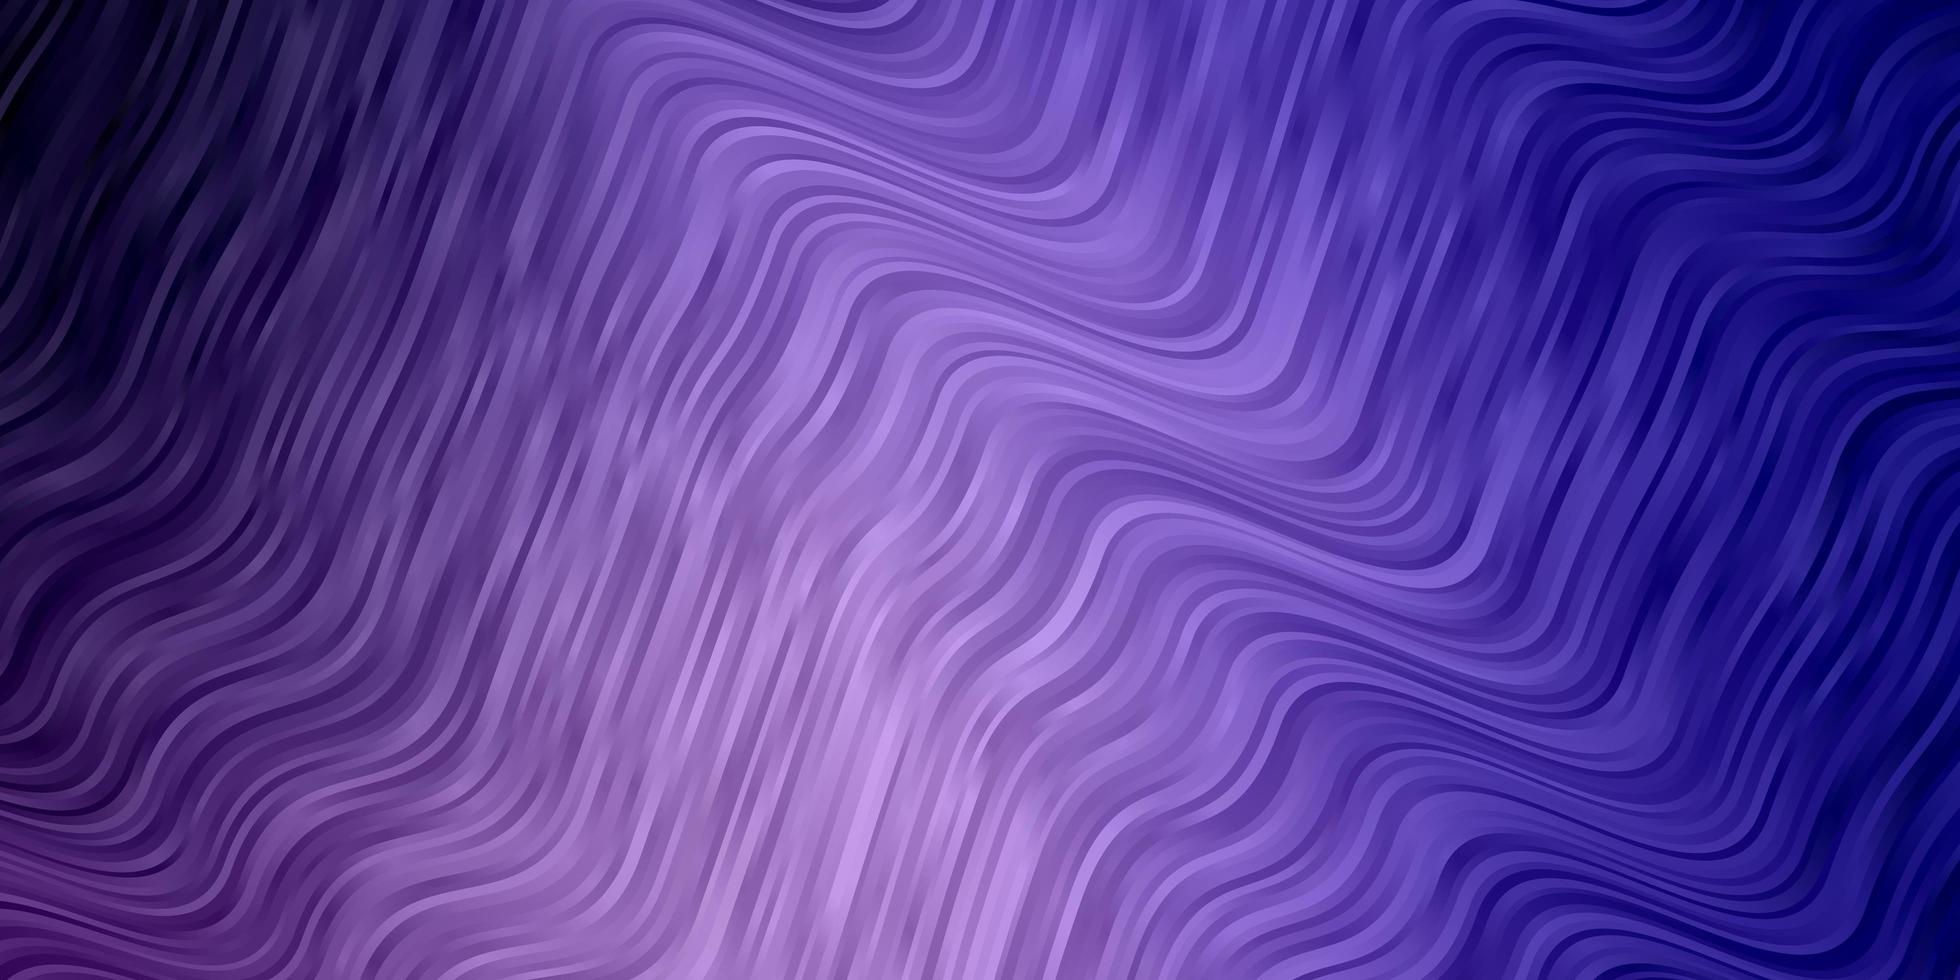 hellvioletter Vektorhintergrund mit gebogenen Linien. vektor